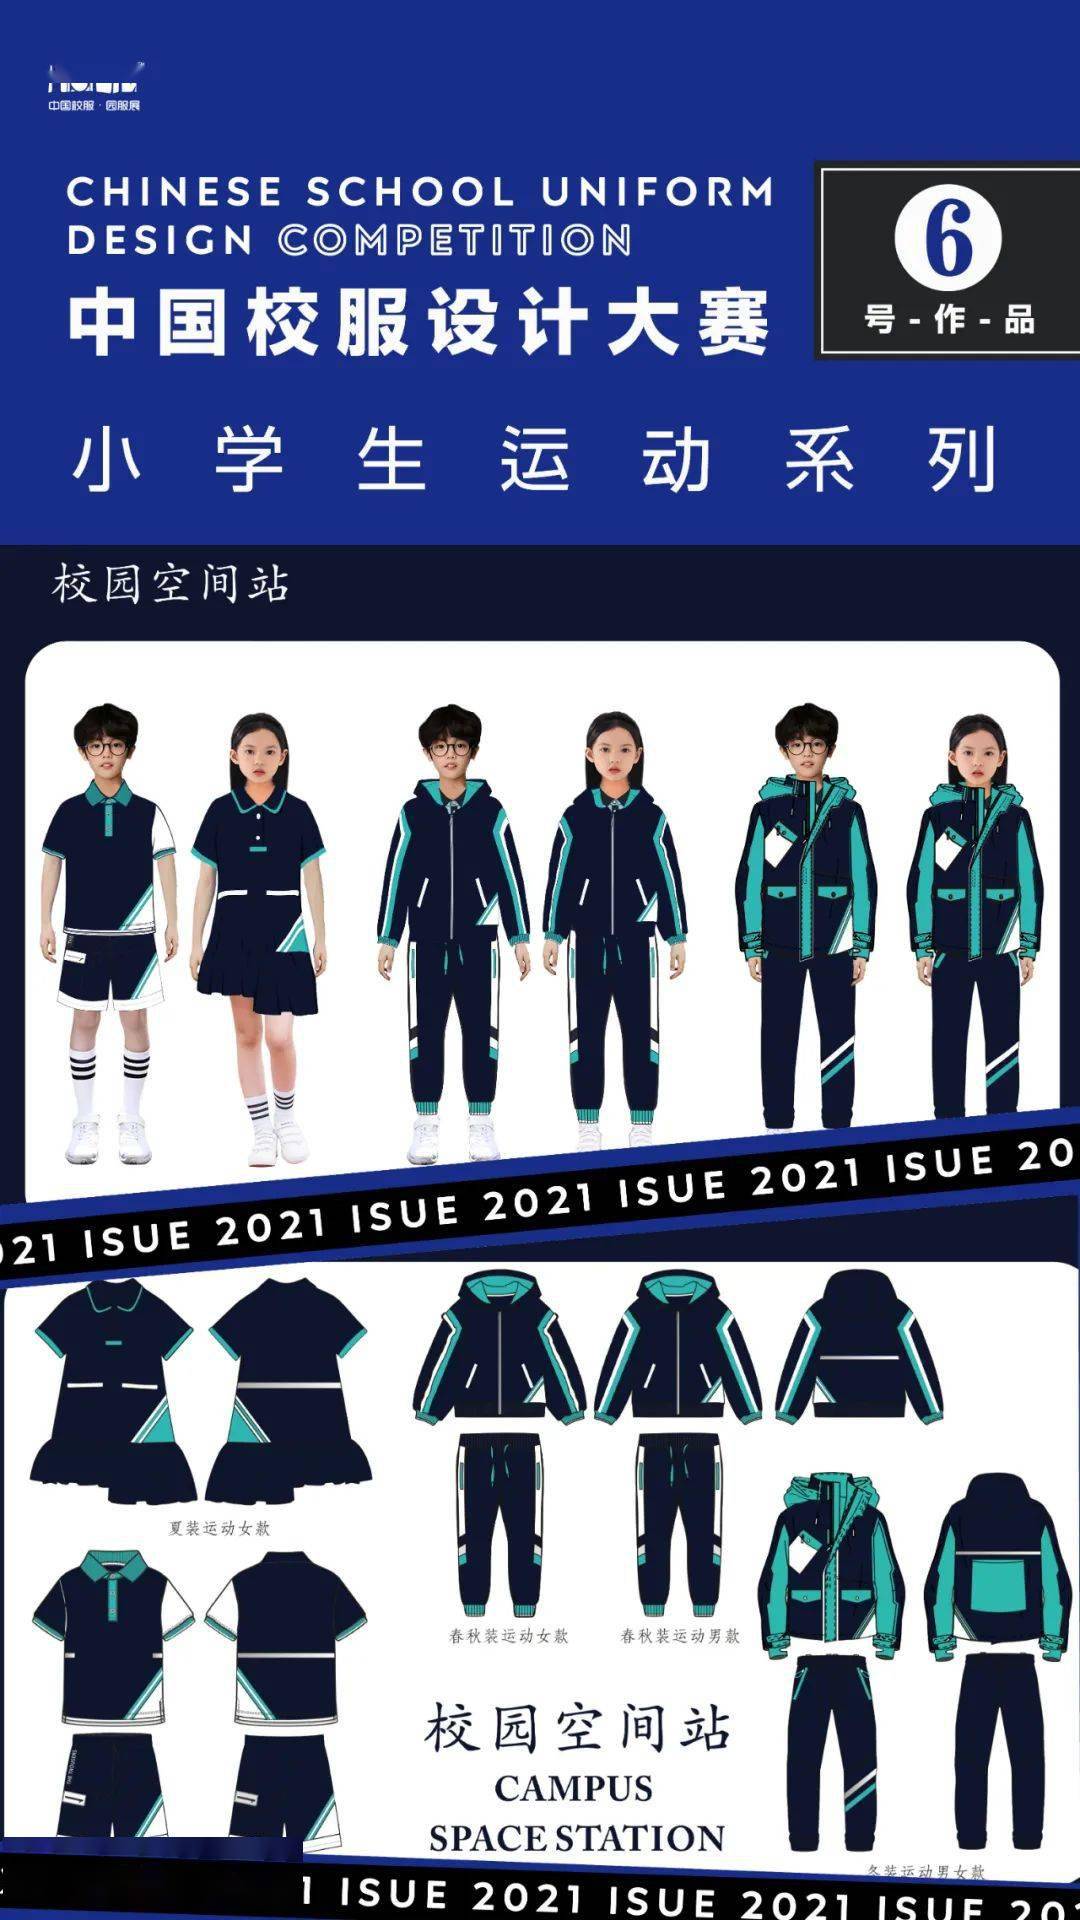 【2021中国校服设计大赛】各组别作品名单 设计效果图